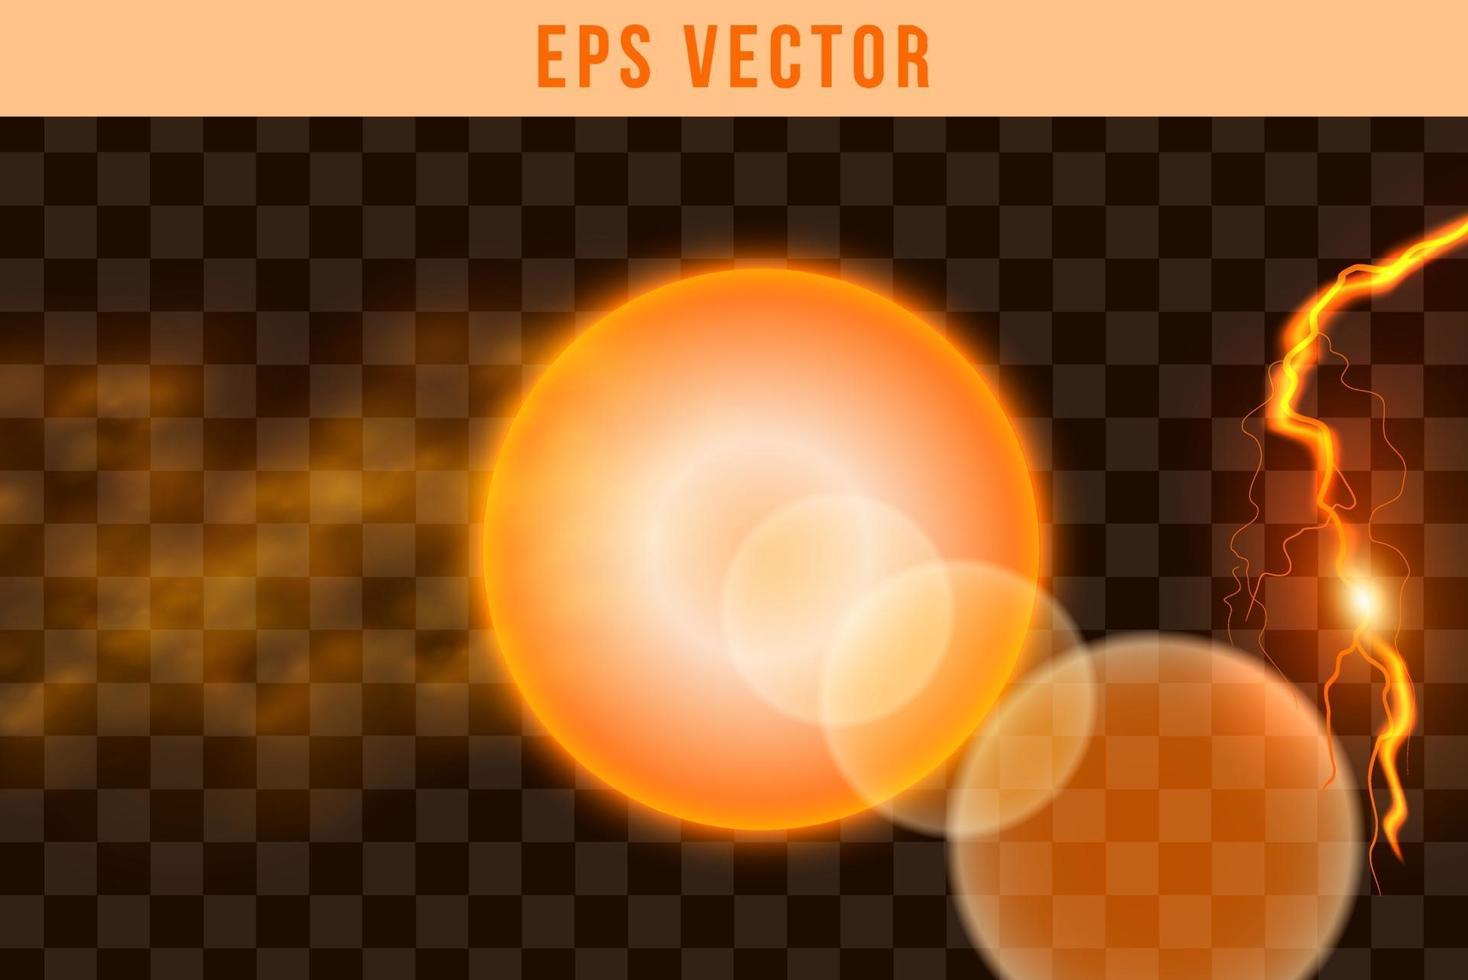 3D-vormen instellen eps vector oranje kleur gloed zon vorm object